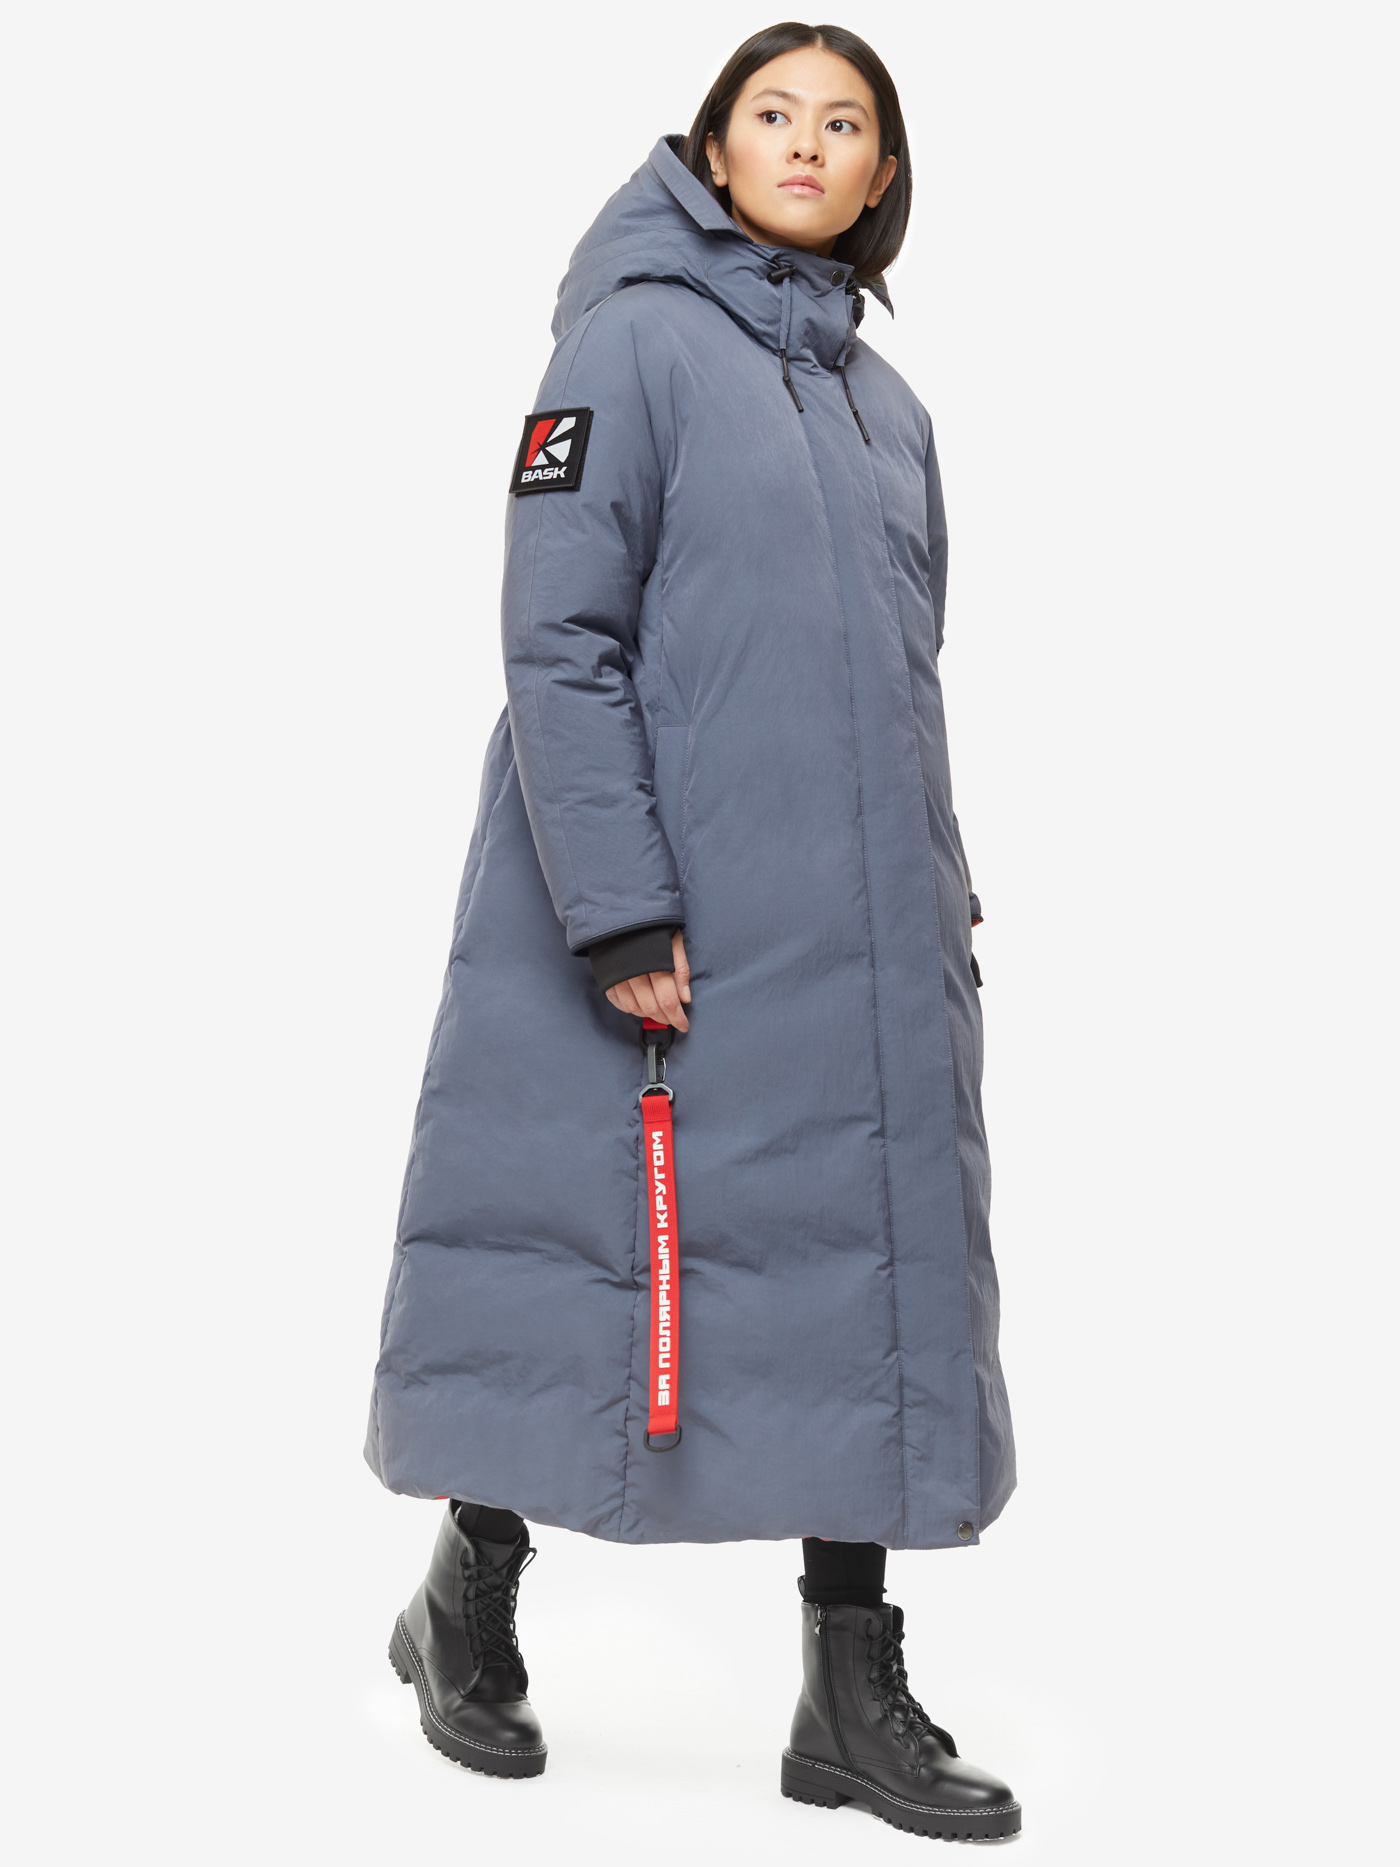 Пуховое пальто BASK, размер 46, цвет маренго 19H51-9675-046 YANA - фото 4